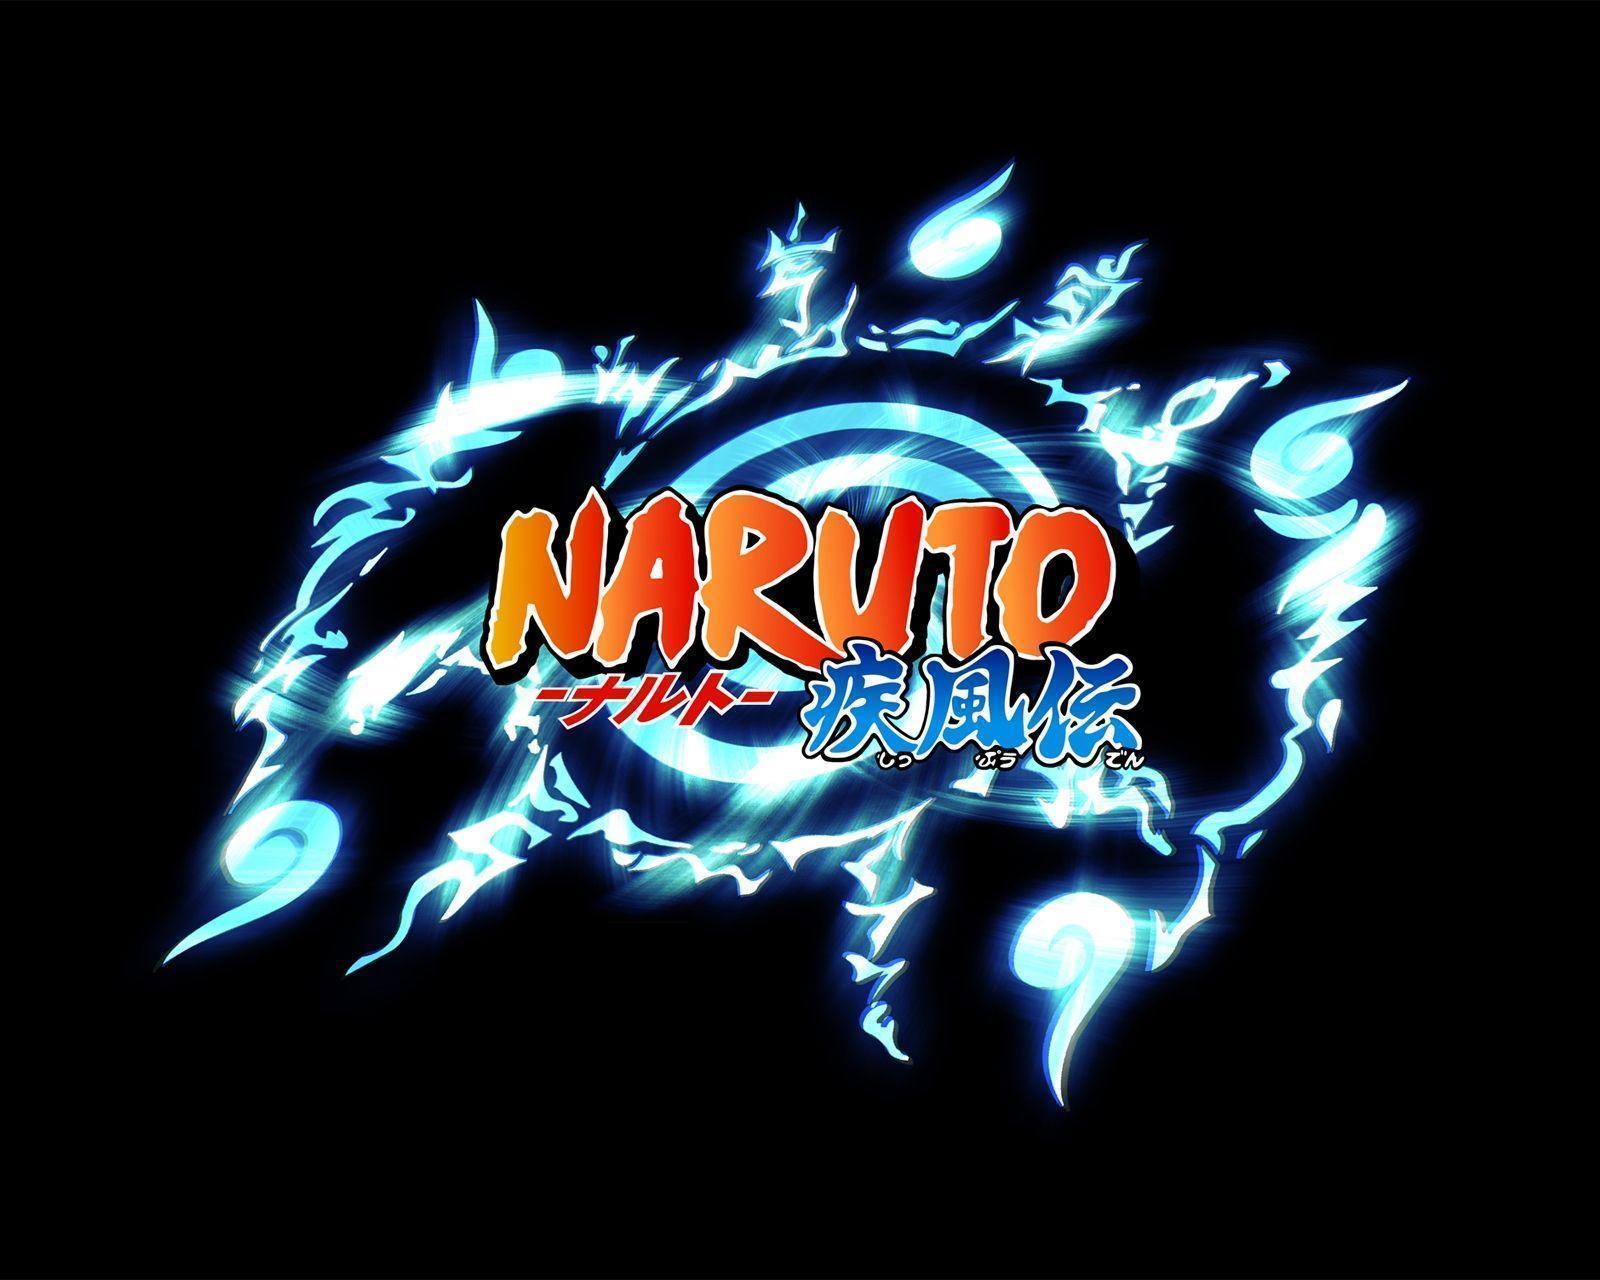 1600 x 1280 · jpeg - Naruto Logo Wallpapers - Wallpaper Cave